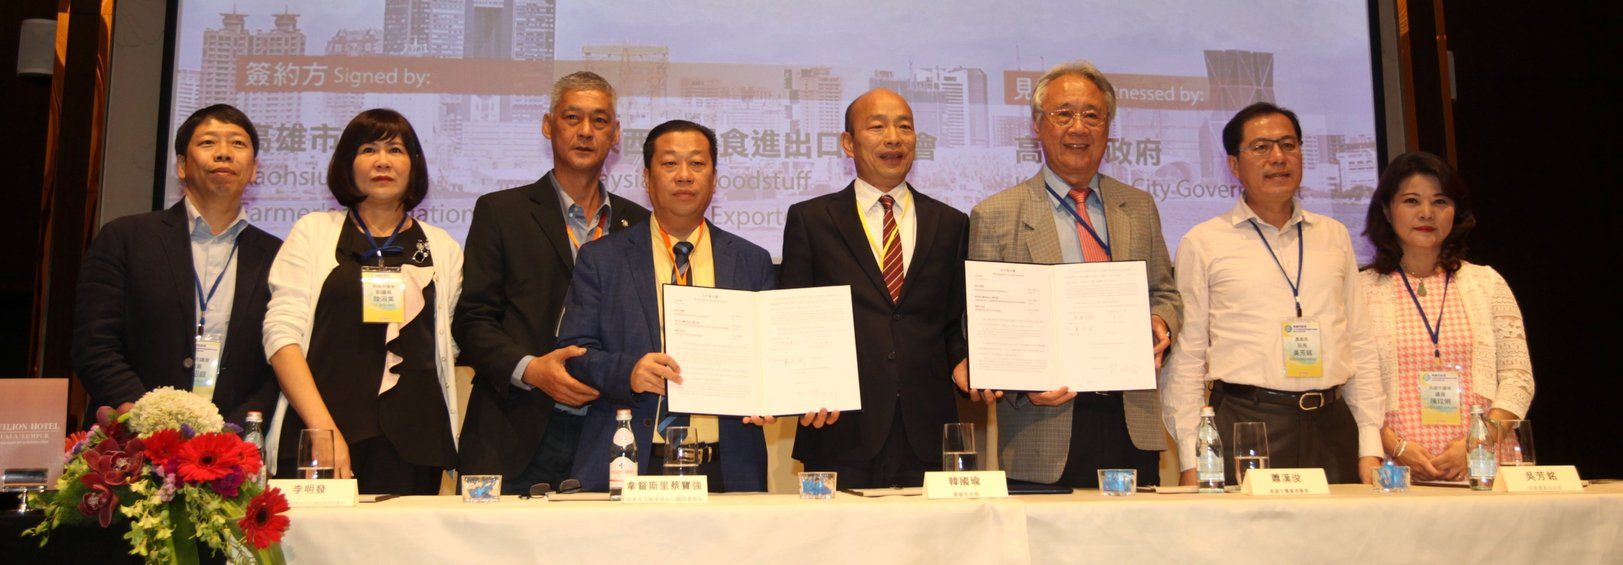 韩国瑜（右四）见证高雄市农业理事长萧汉俊（右三）与马来西亚干粮进出口商会总会长拿督斯里蔡宝强（左四）签署了解备忘录后与代表团合照。